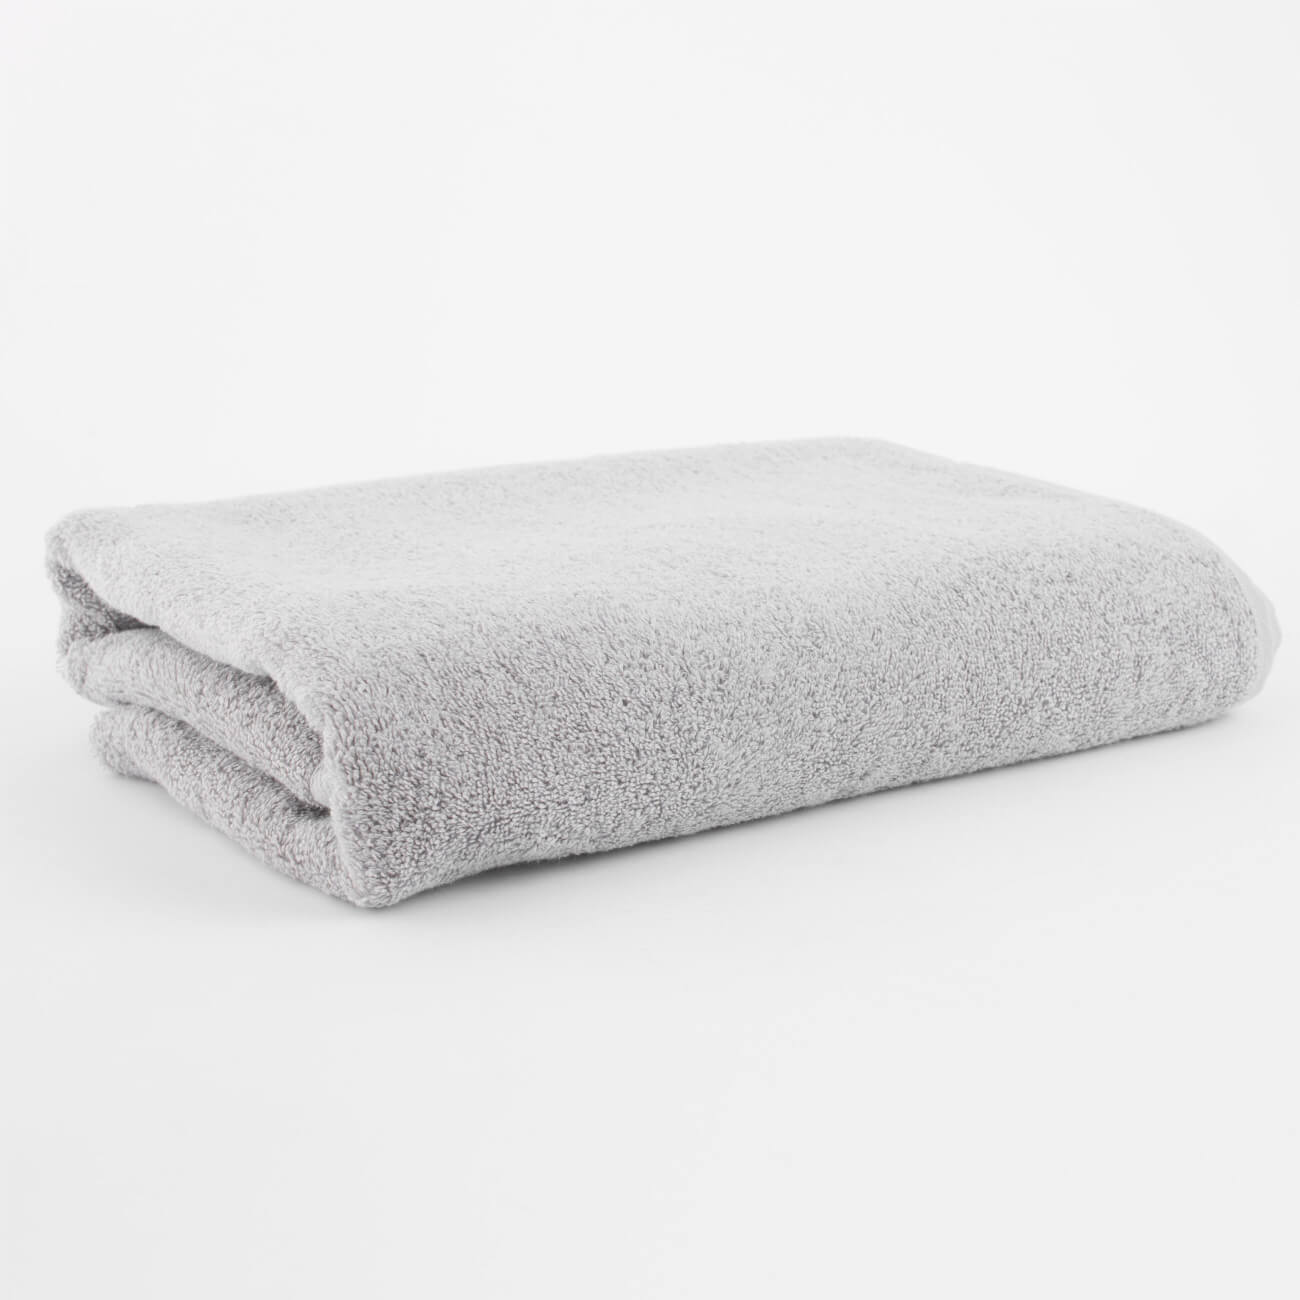 Полотенце, 70х140 см, хлопок, светло-серое, Wellness бумажное полотенце tork